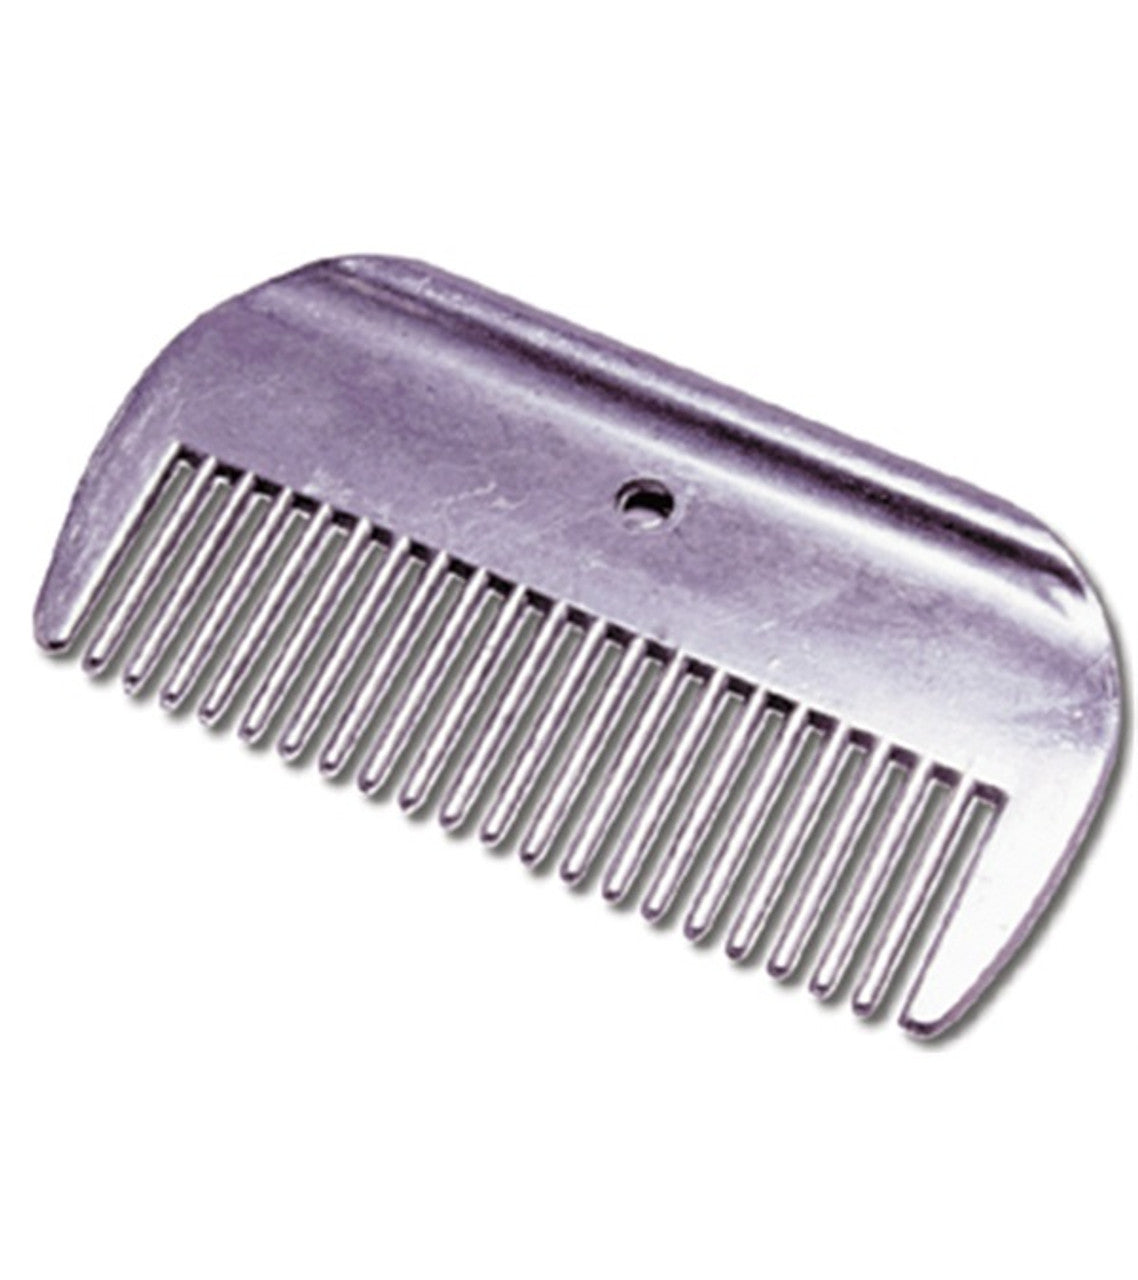 Aluminum Mane Comb Wide-TexanSaddles.com